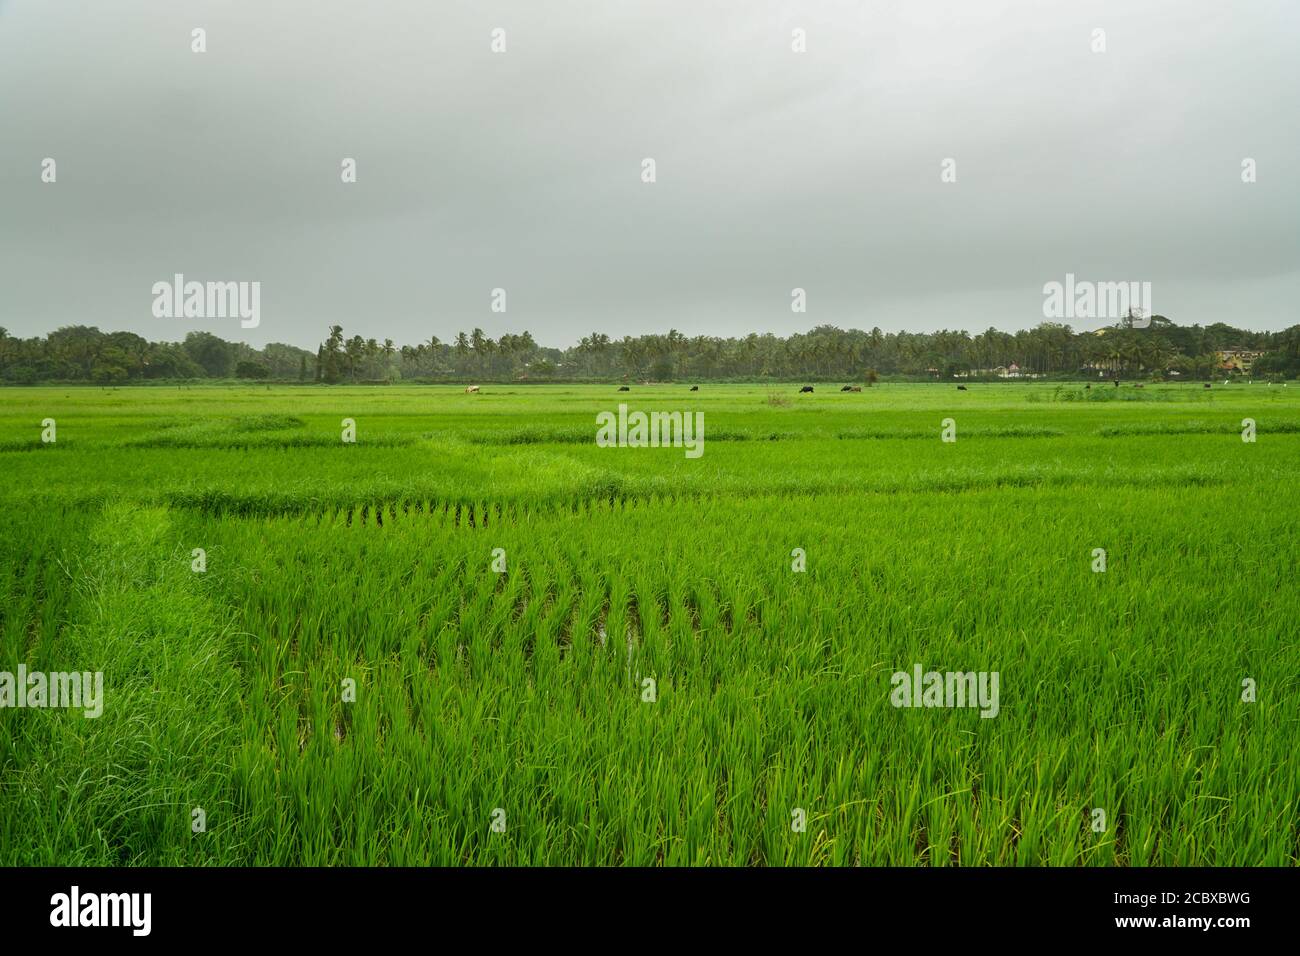 Les rizières verdoyantes pendant les moussons de Goa, en Inde Banque D'Images